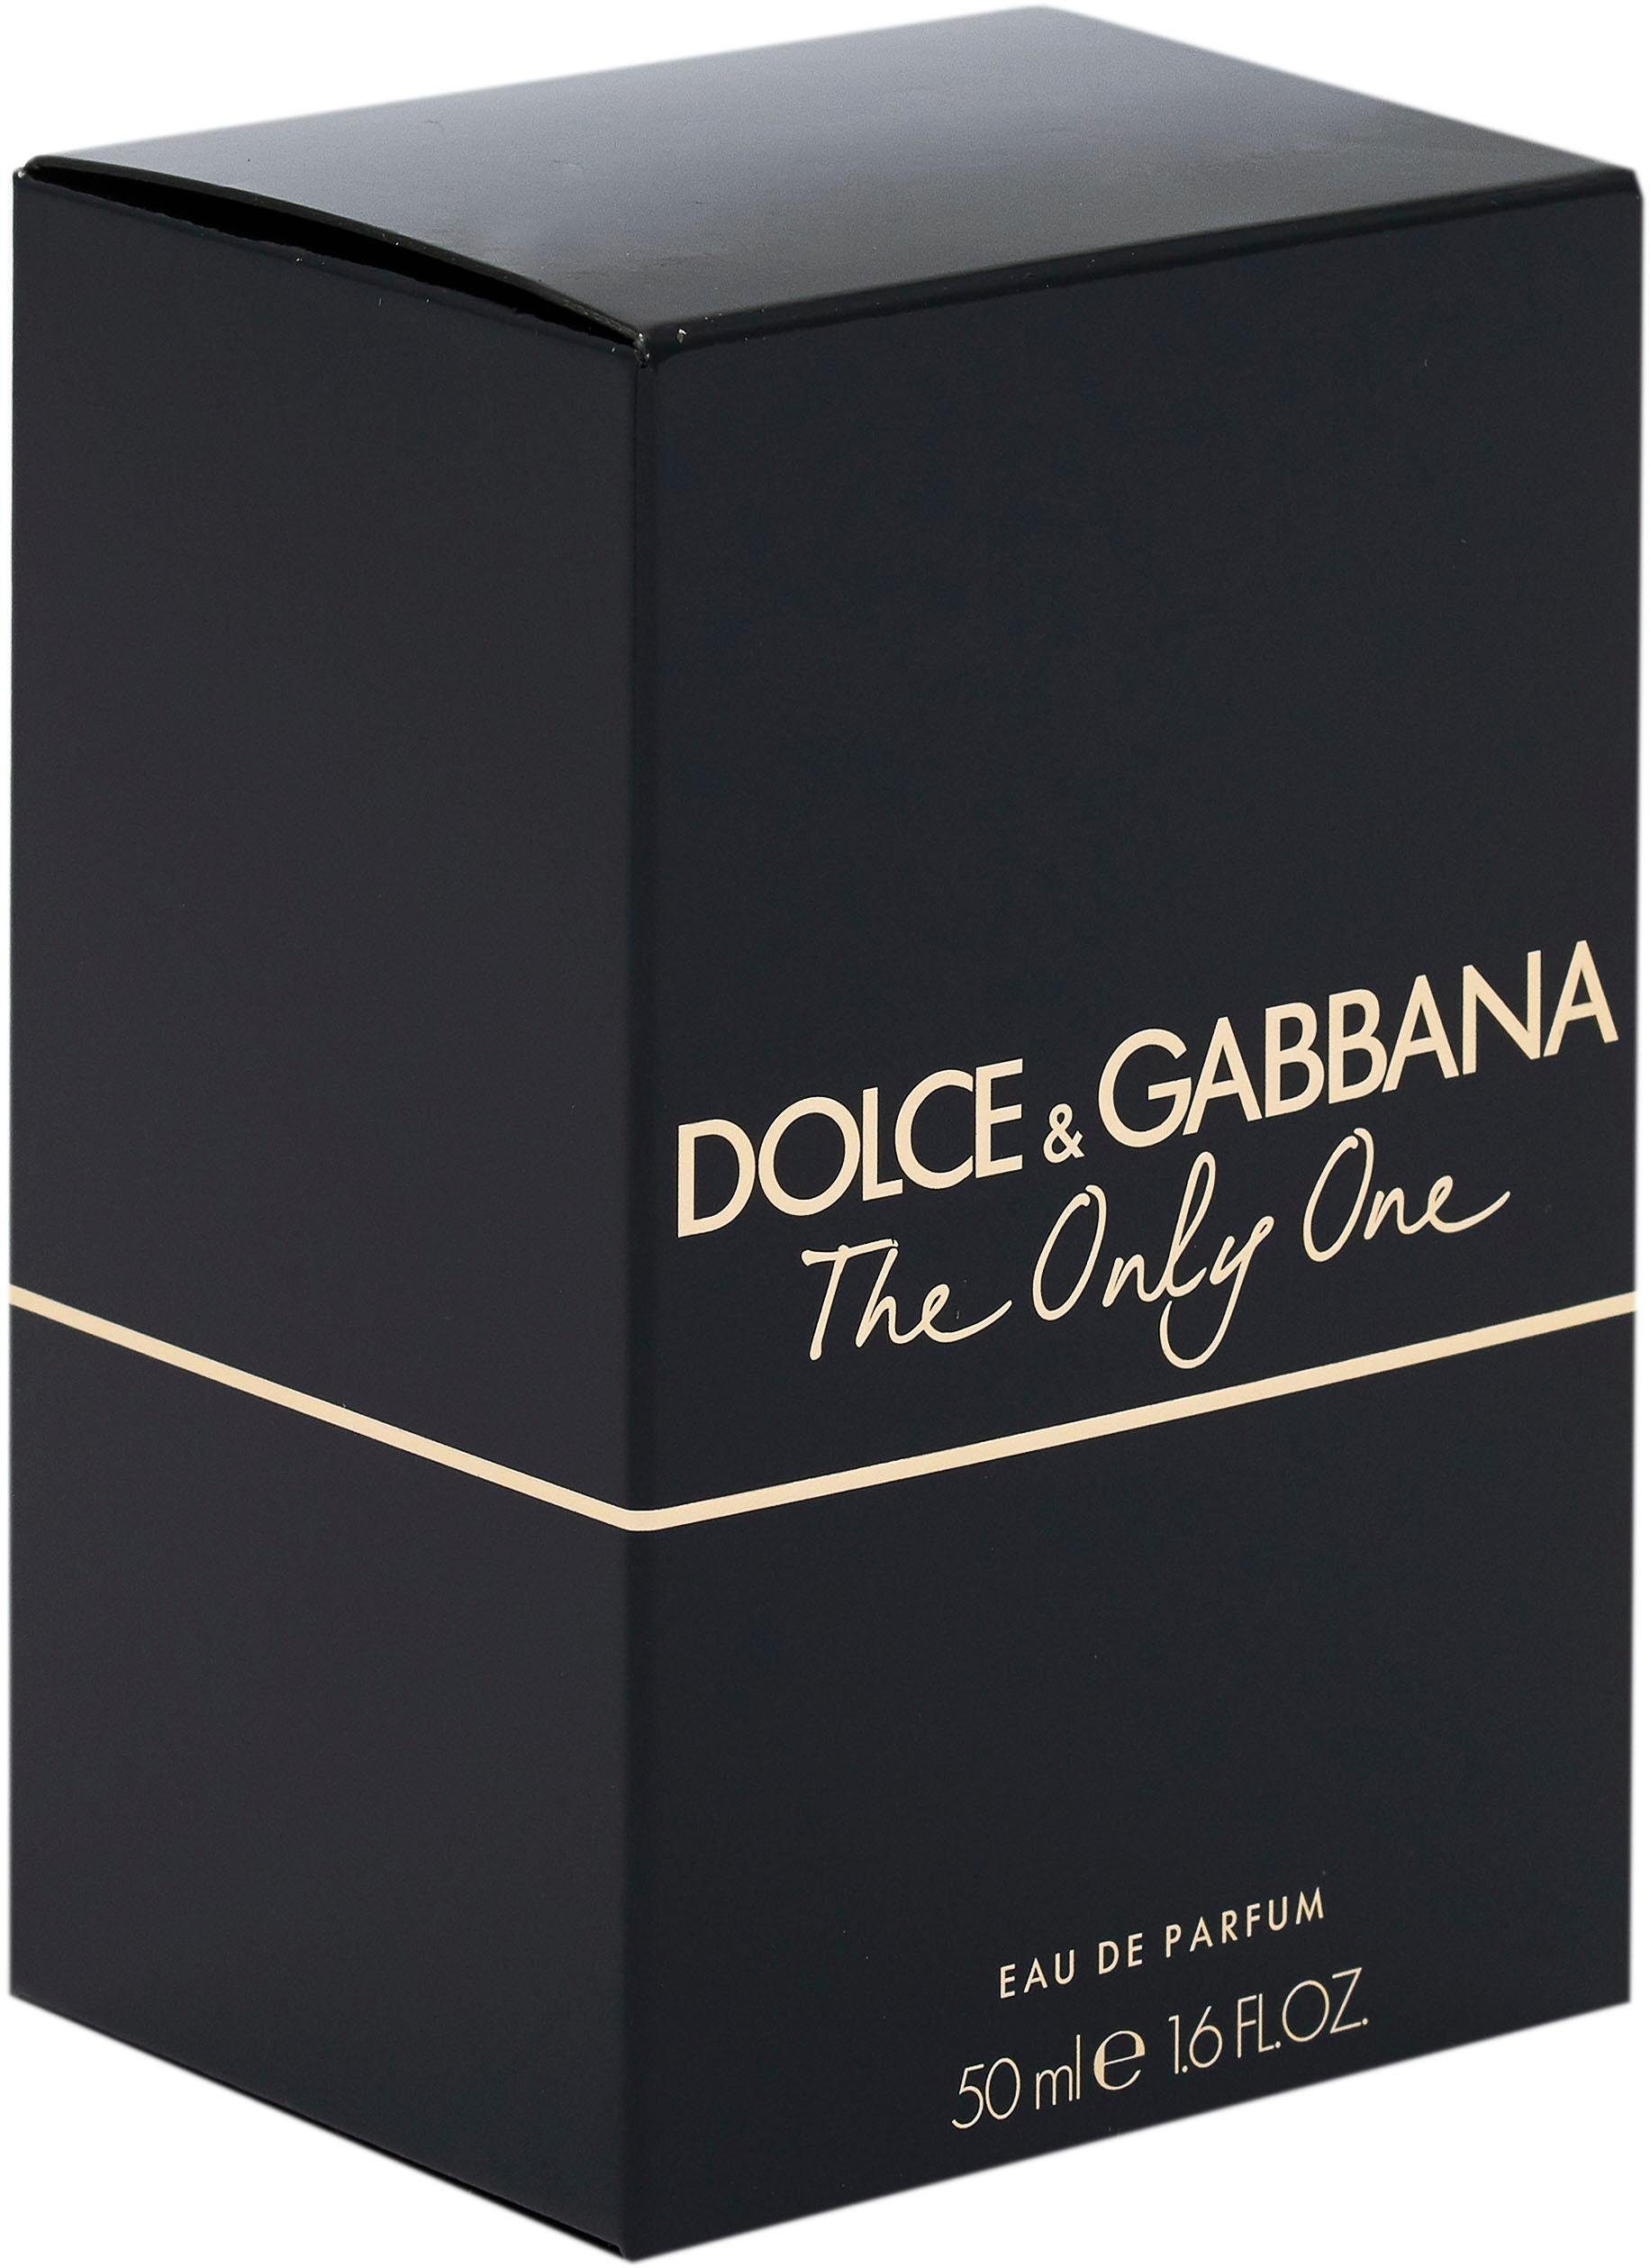 de Eau GABBANA The Only Parfum DOLCE & One